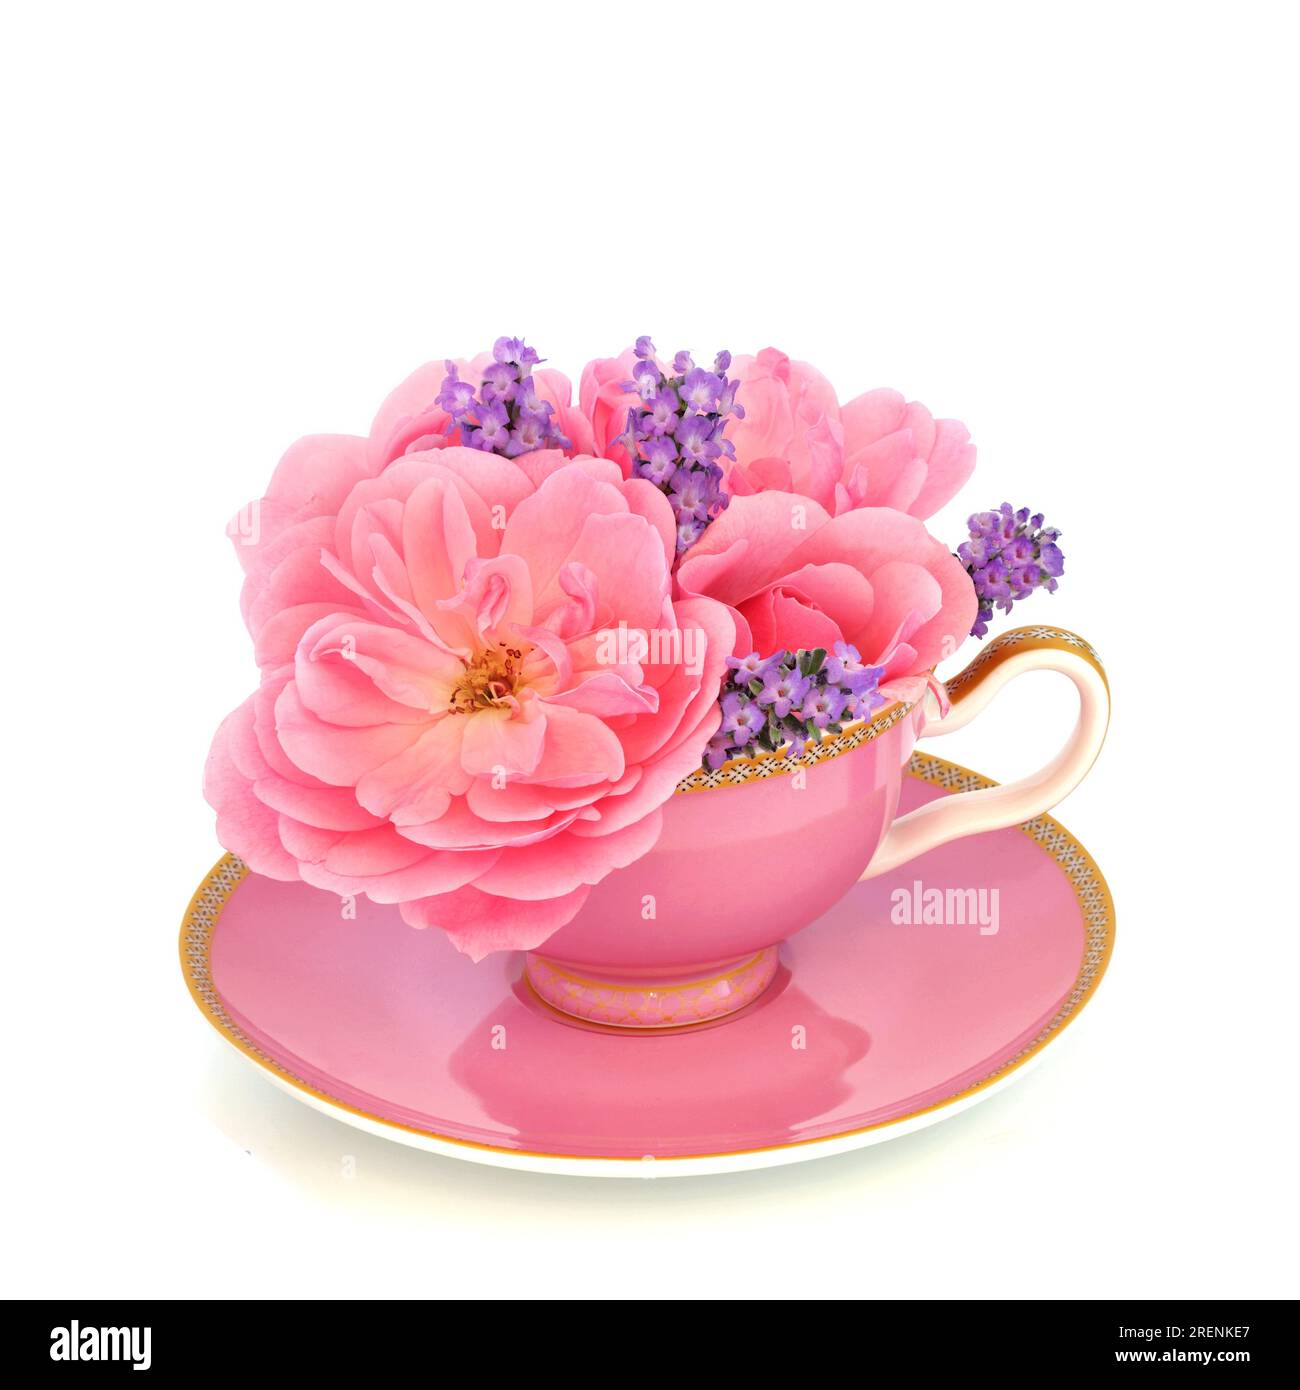 Fiori di lavanda e rosa in una tazza da tè bianca. Cibo surreale e divertente composizione di erboristeria alternativa. I fiori hanno proprietà adattogene. Foto Stock